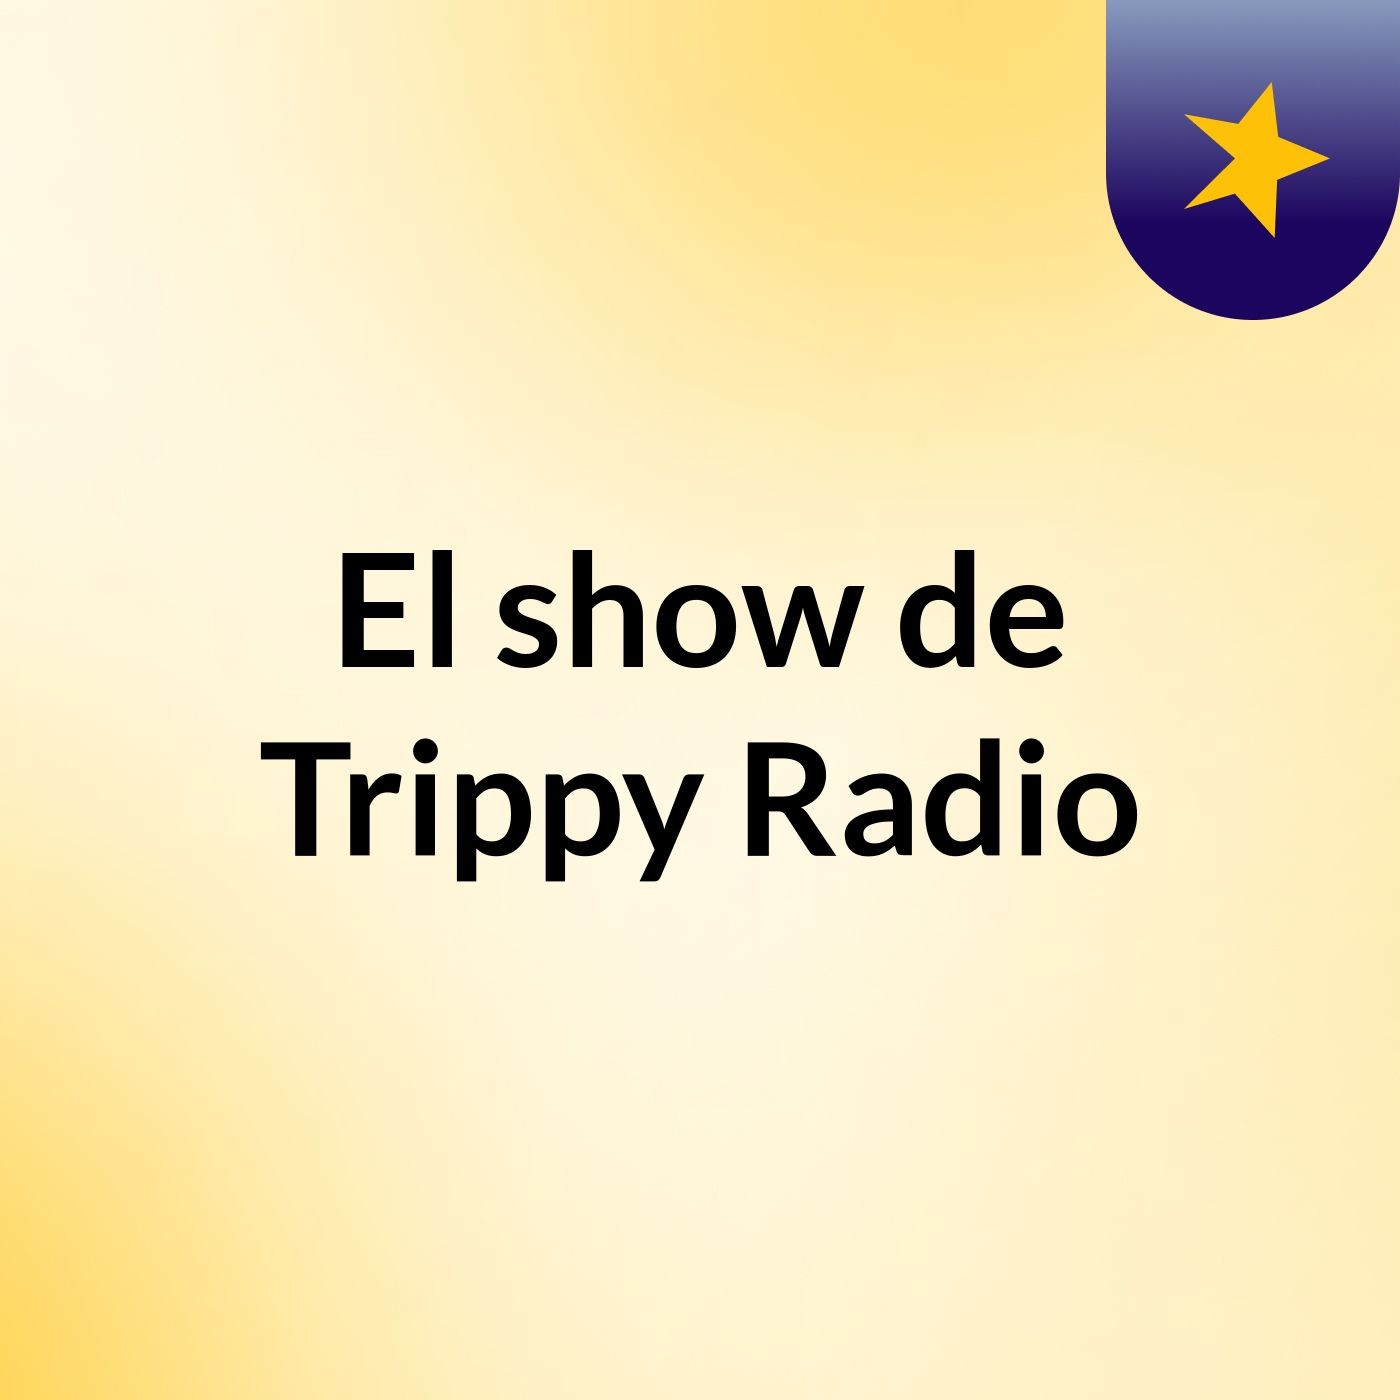 El show de Trippy Radio